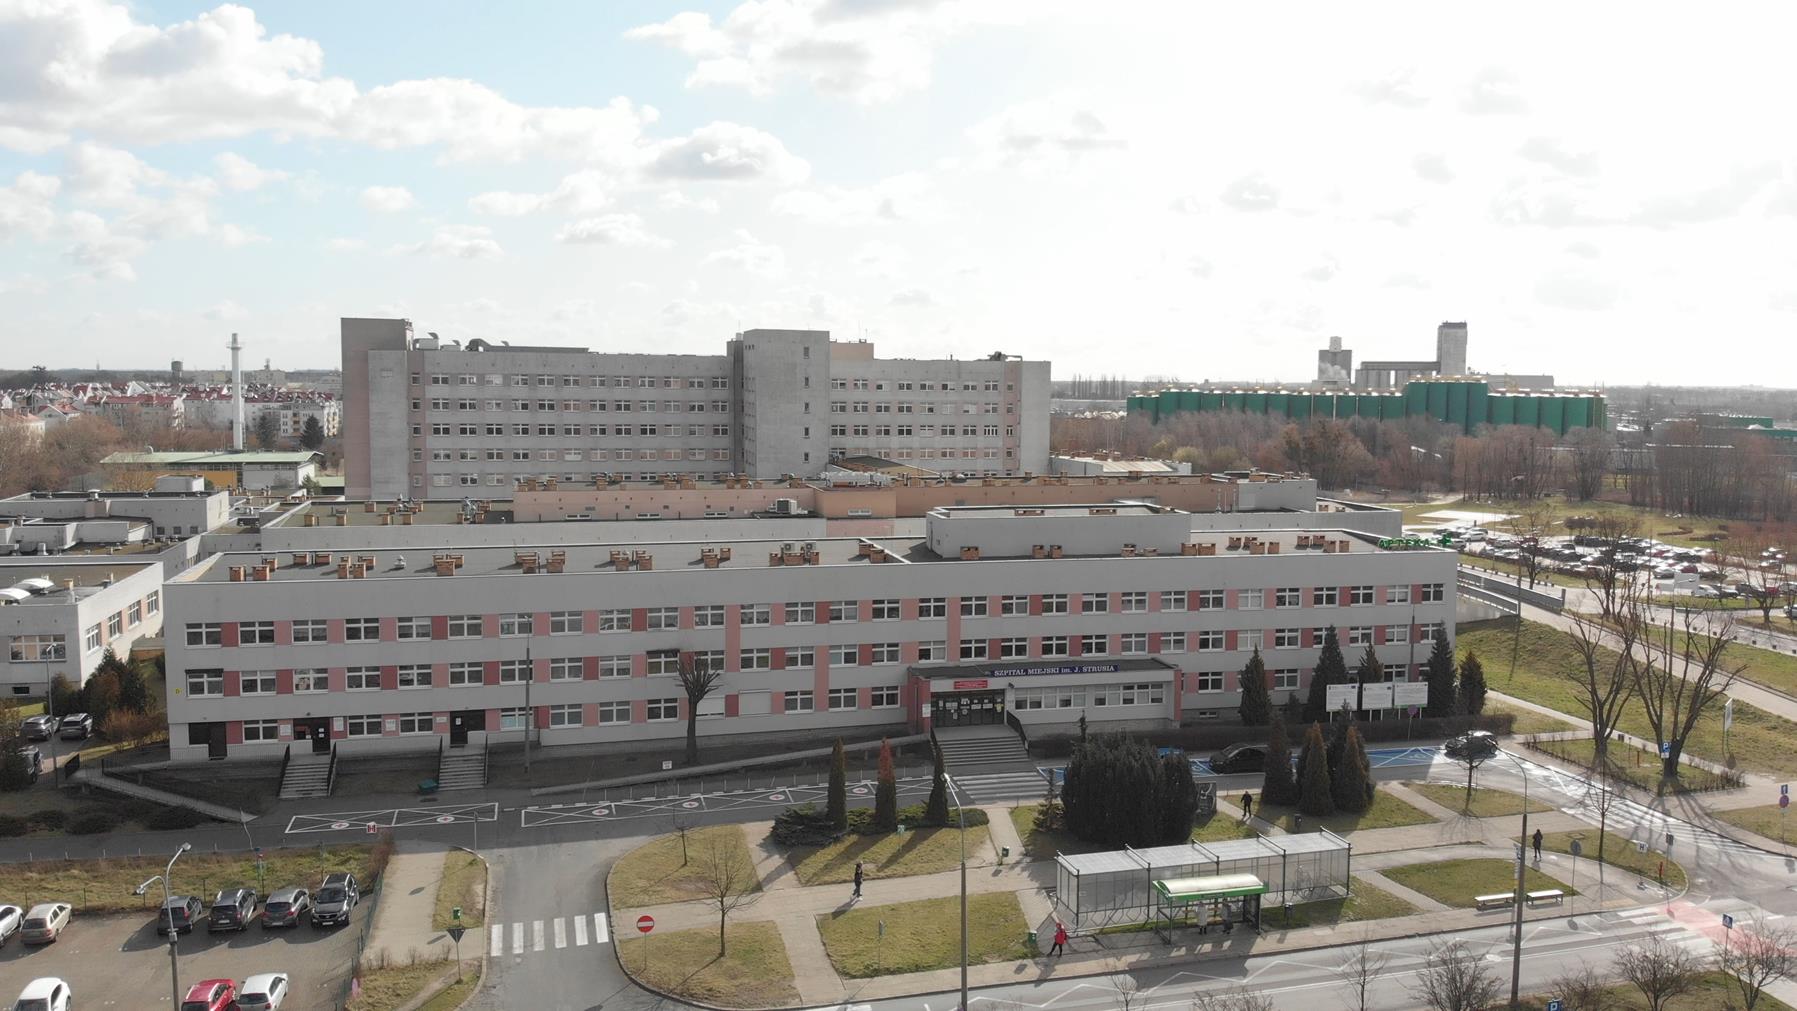 Widok z lotu ptaka na budynek szpitala im. J. Strusia, na pierwszym planie izba przyjęć - grafika artykułu